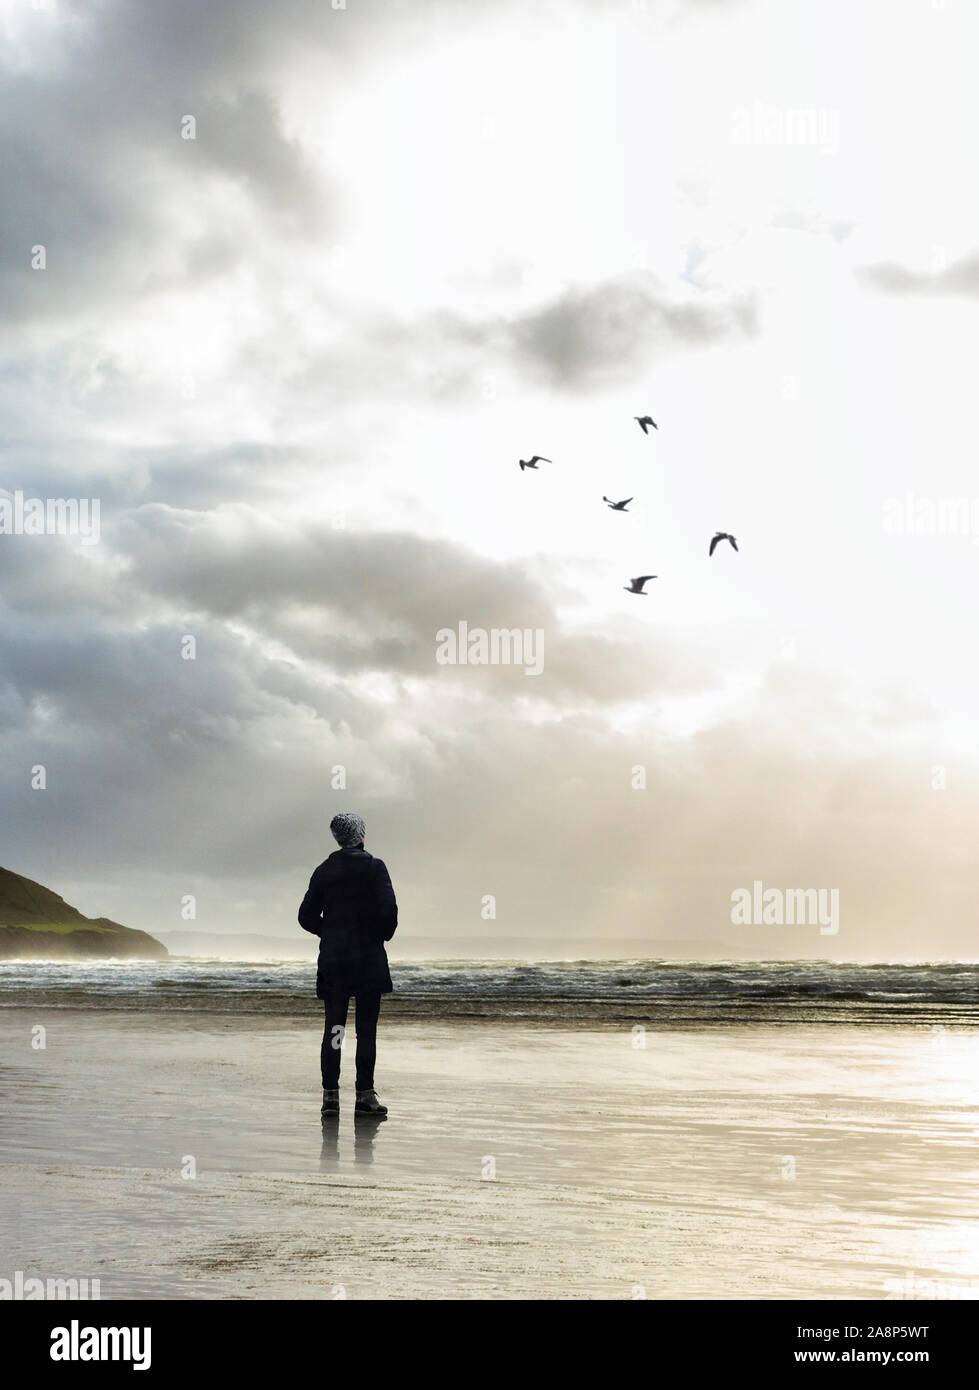 Ilustración de una sola cifra de pie en una playa frente al mar, mirando a un grupo de gaviotas contra el sol vespertino, adecuado para una portada del libro. Foto de stock